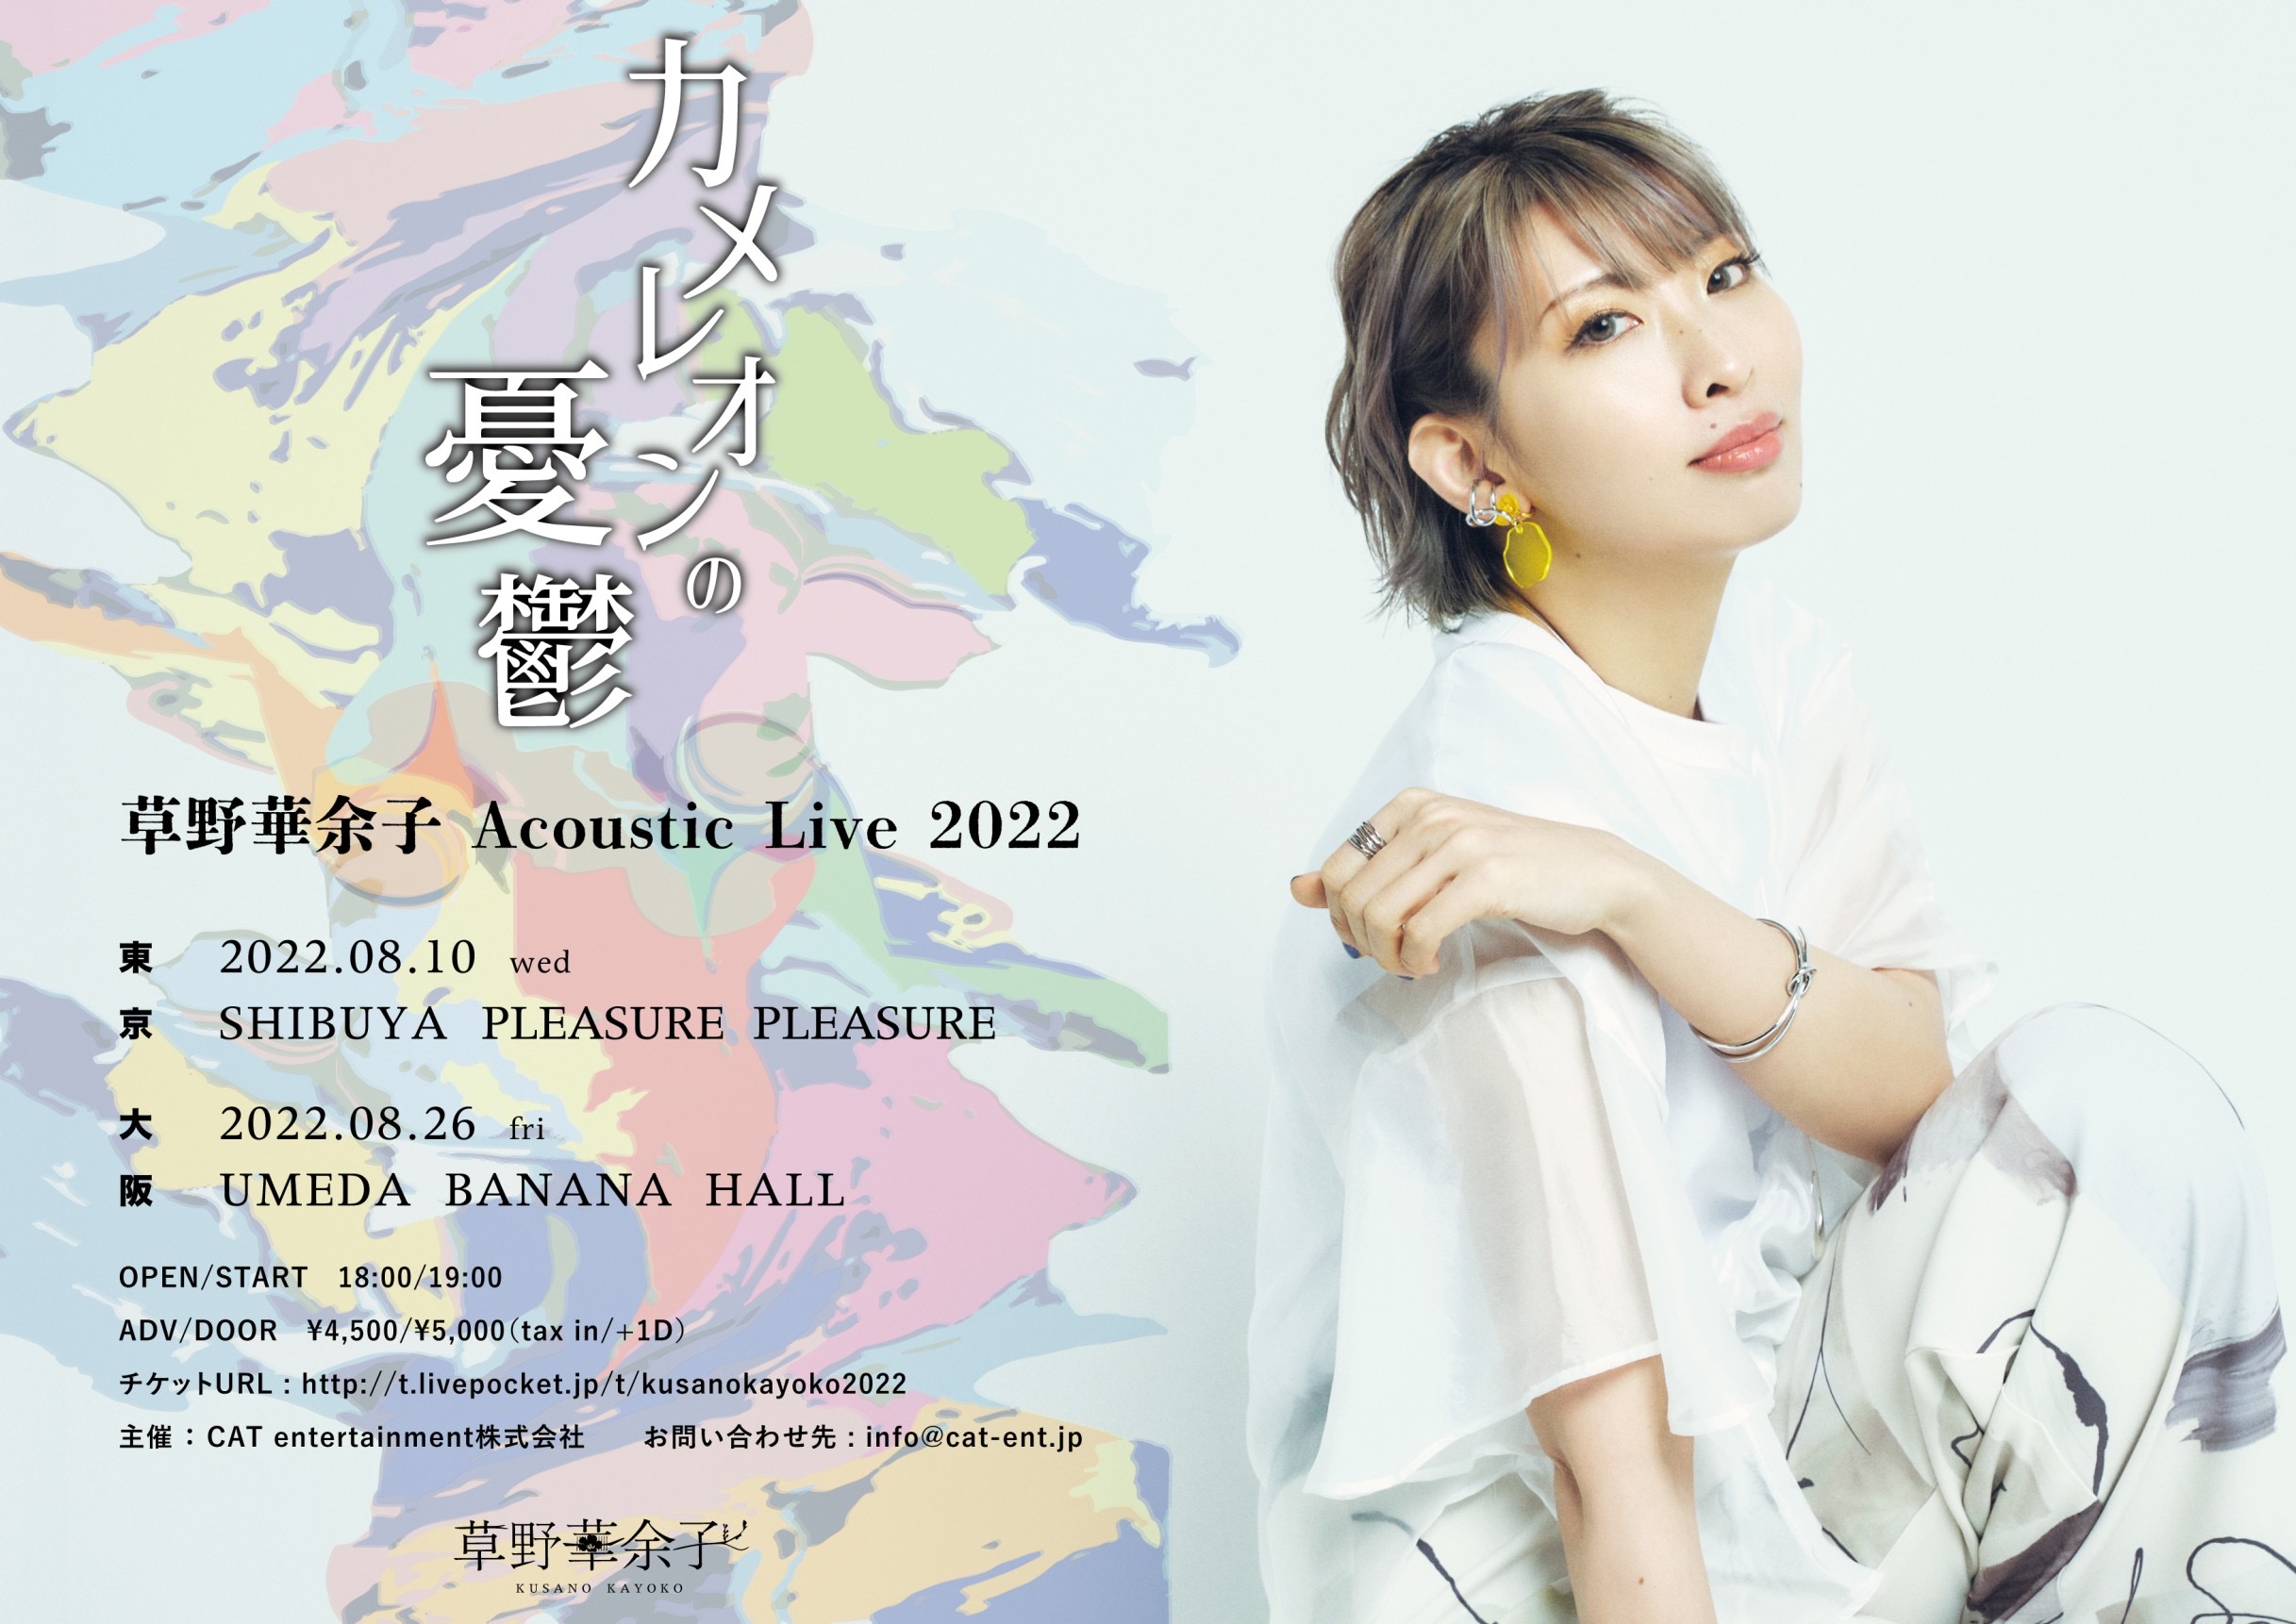 【東京公演】草野華余子 Acoustic Live 2022「カメレオンの憂鬱」